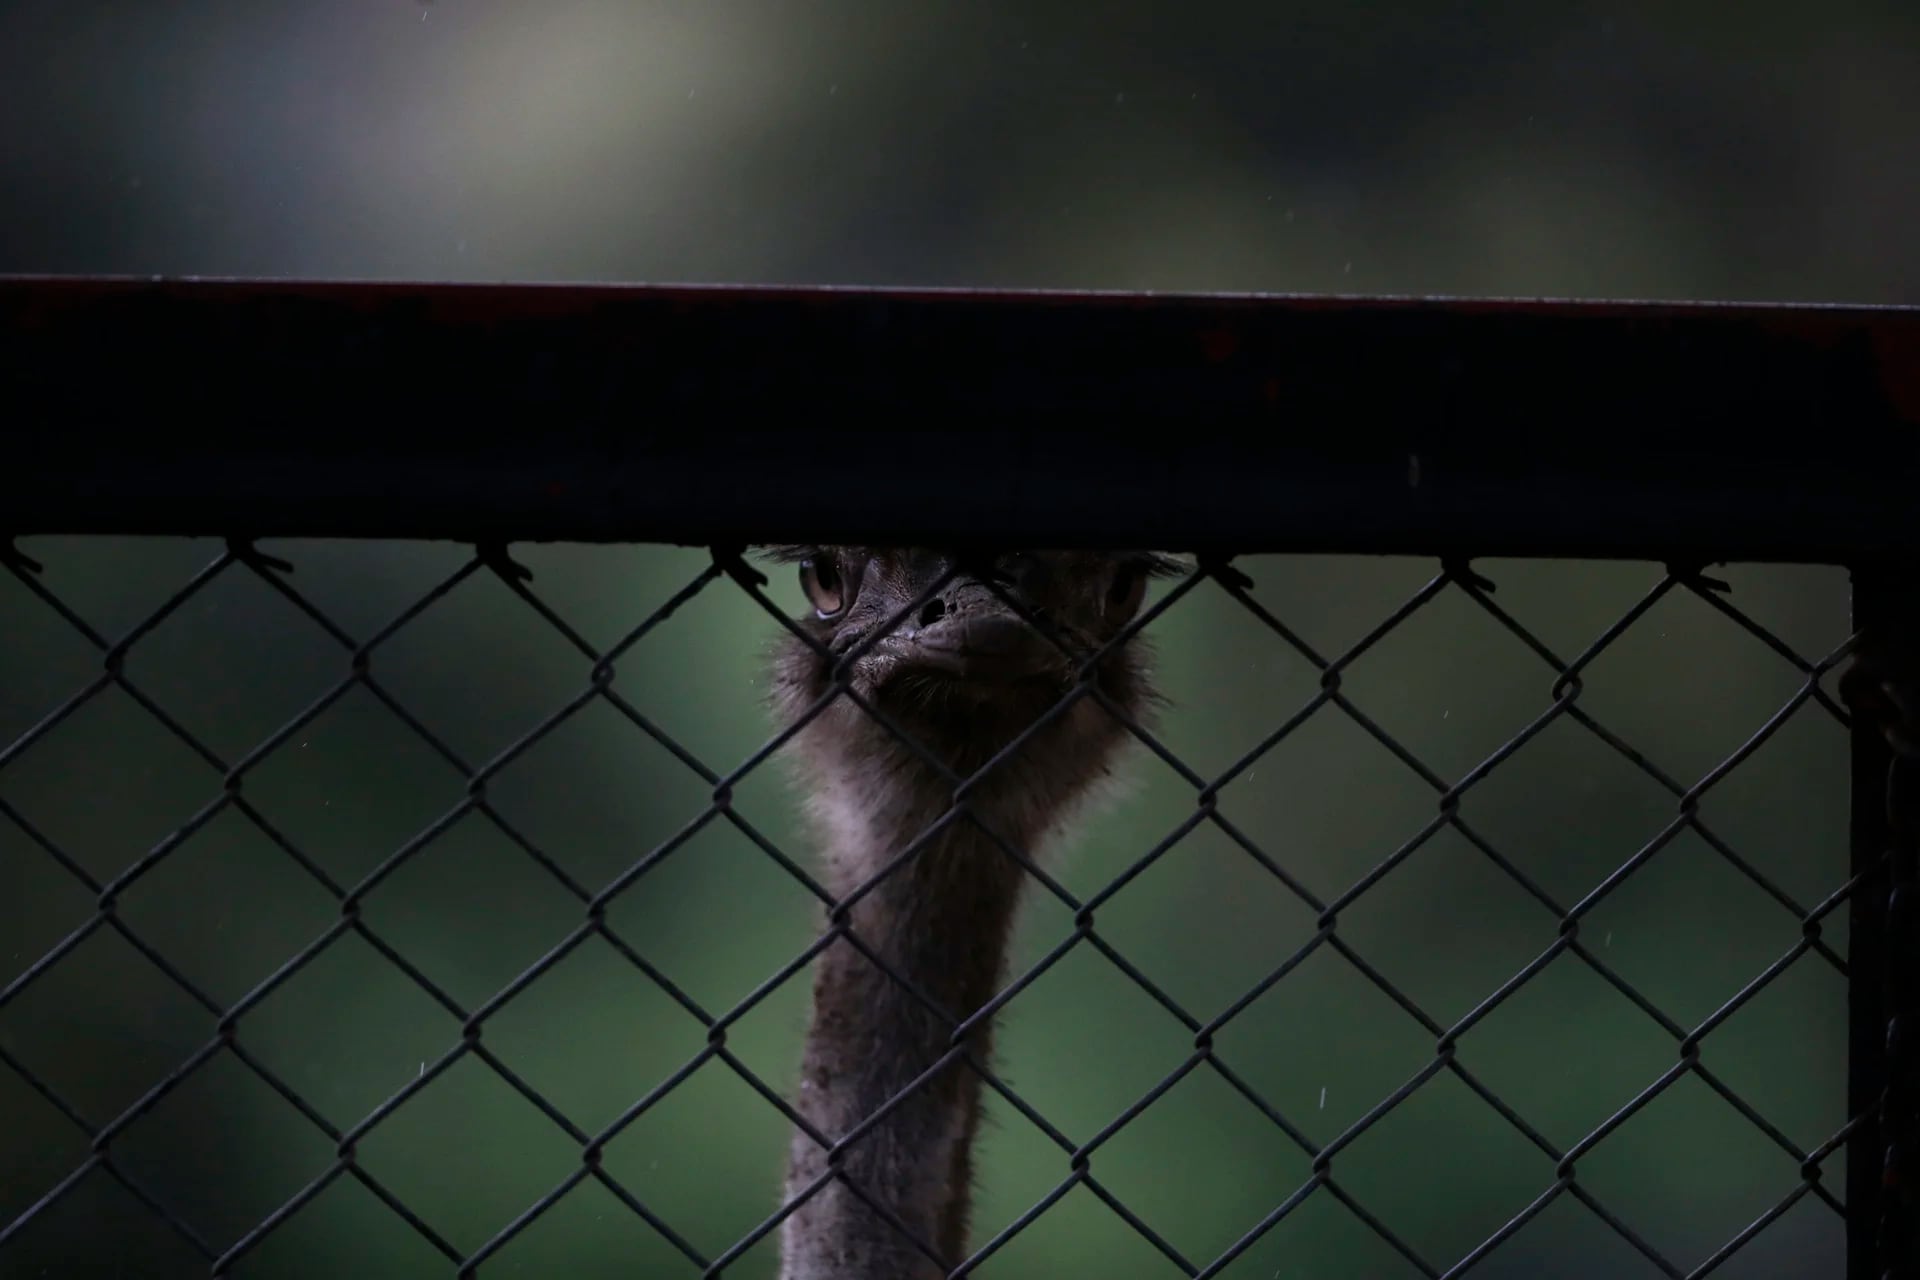 Un avestruz mira a través de la trama abierta de una valla de tela metálica